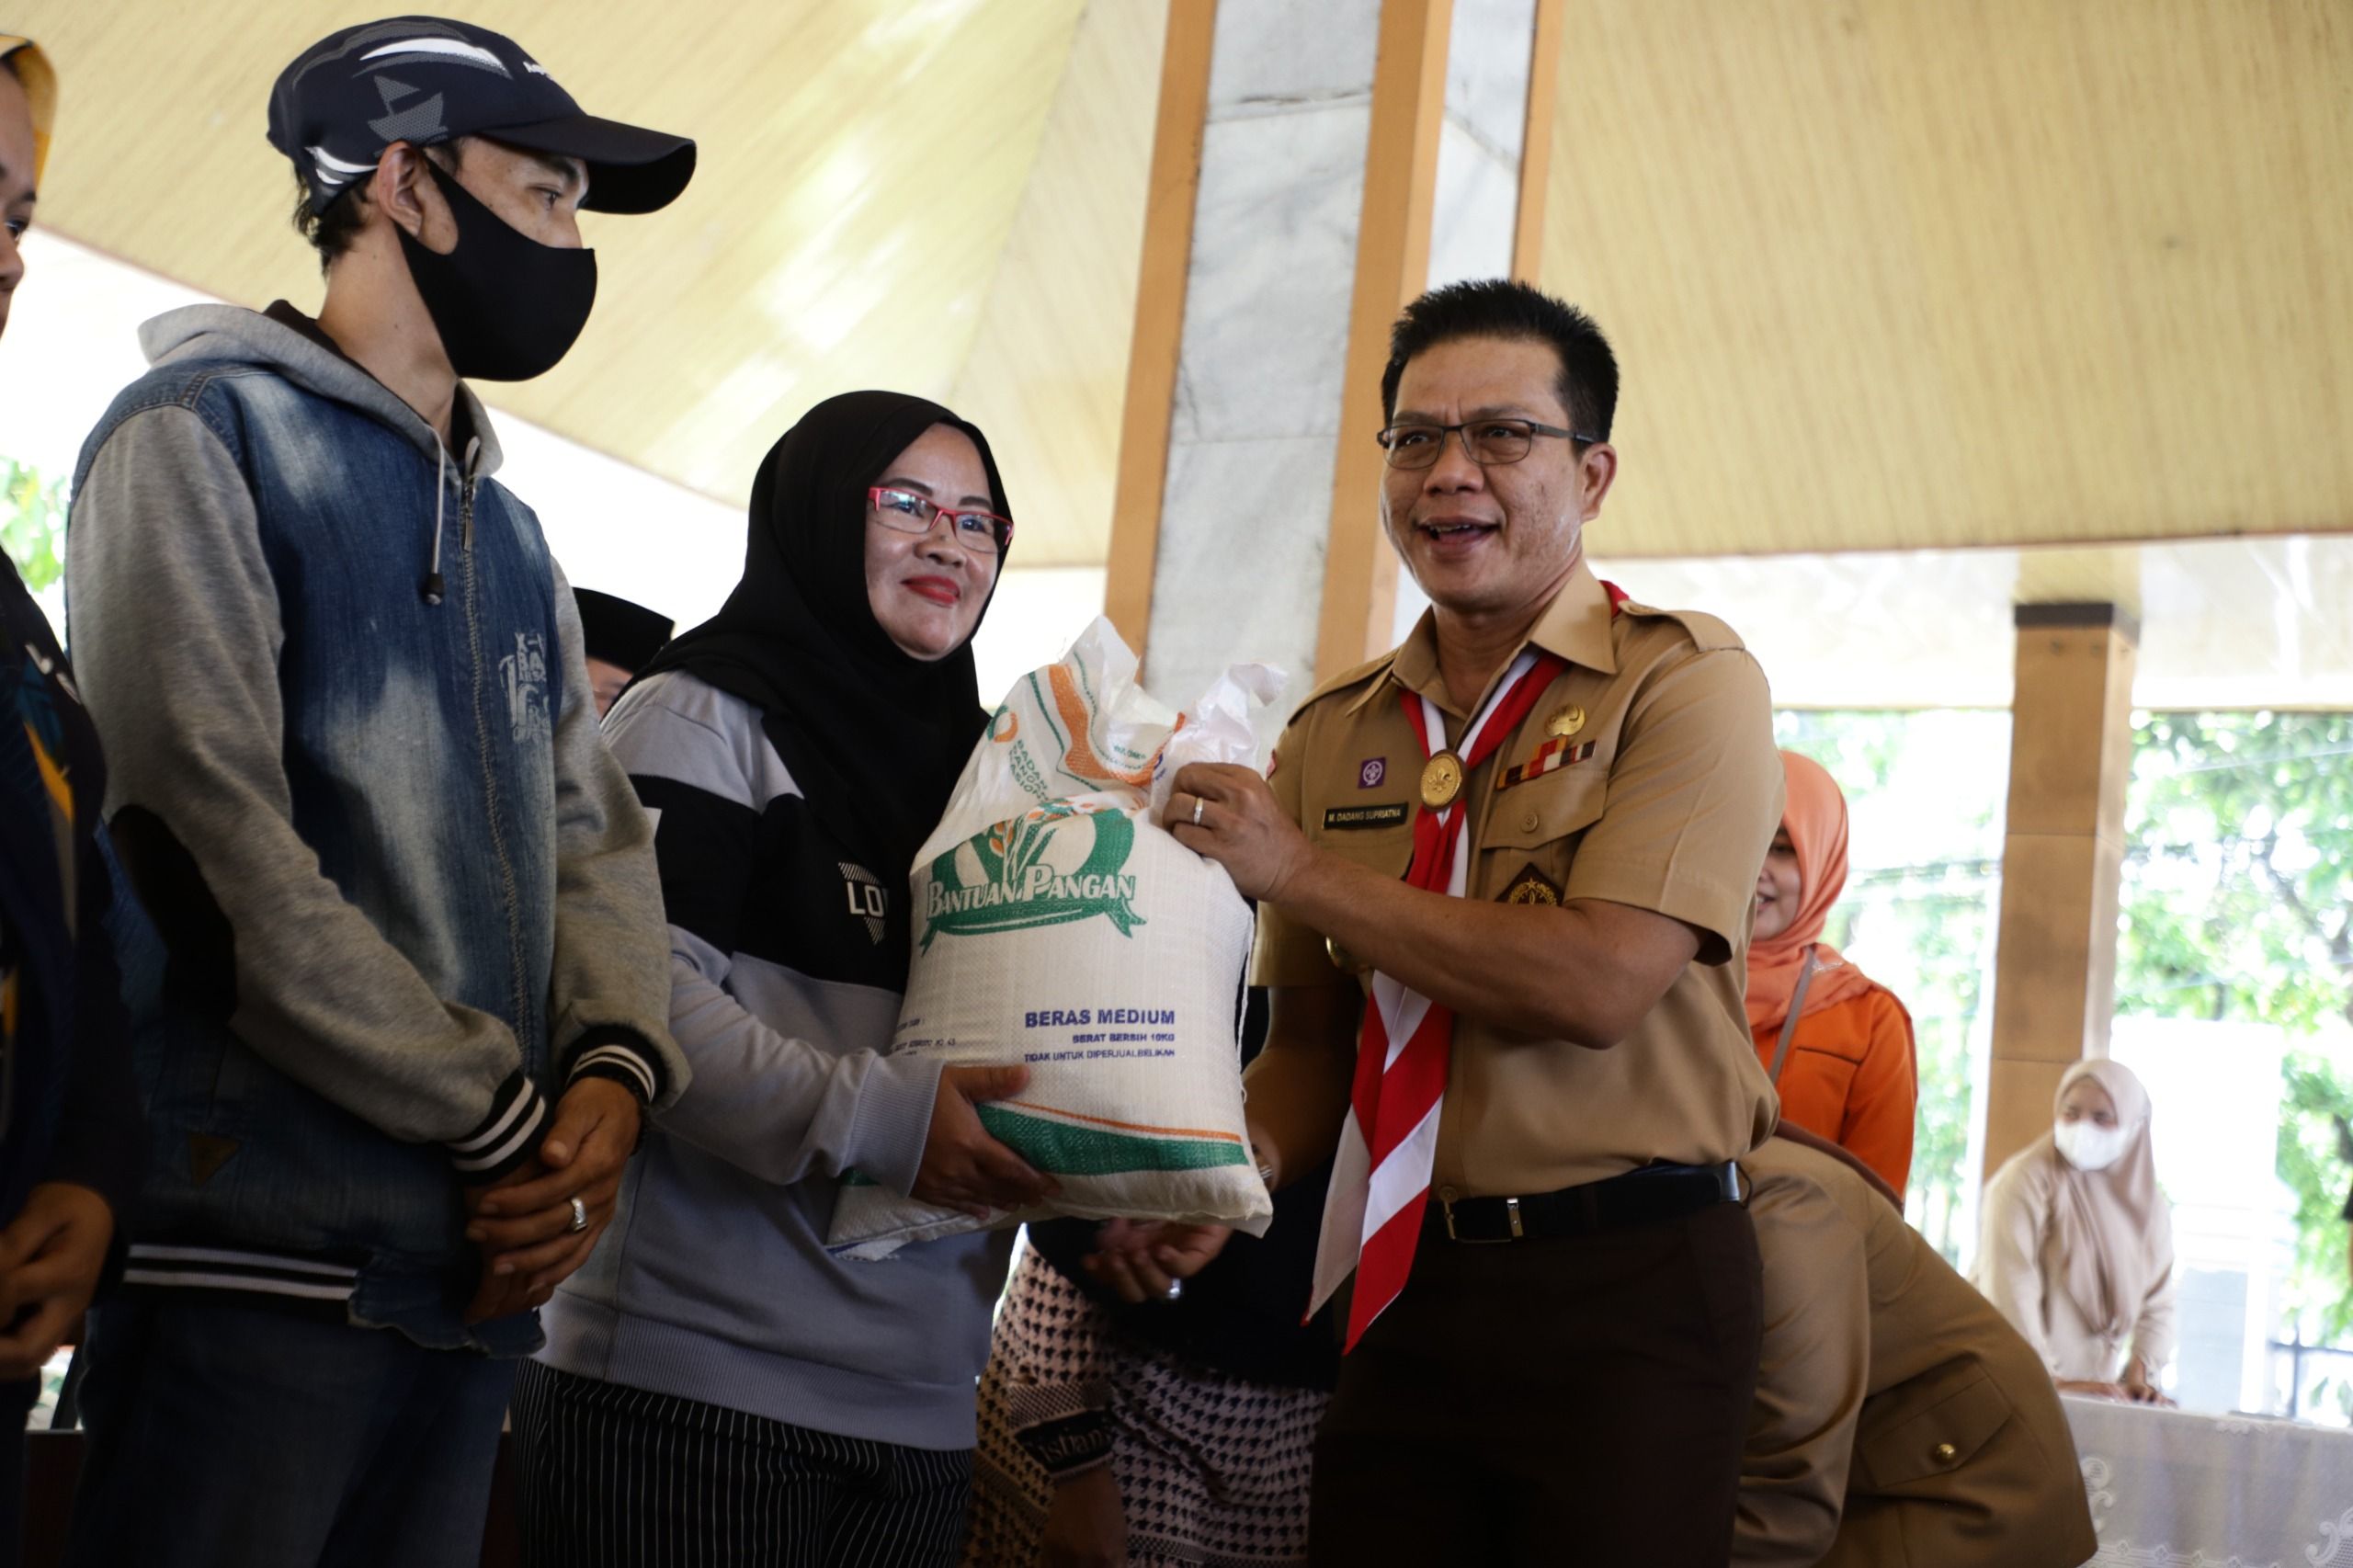 Bantuan beras dari Bupati Bandung Dadang Supriatna bagi warga yang membutuhkan untuk ketahanan pangan hadapi El Nino./ Diskominfo